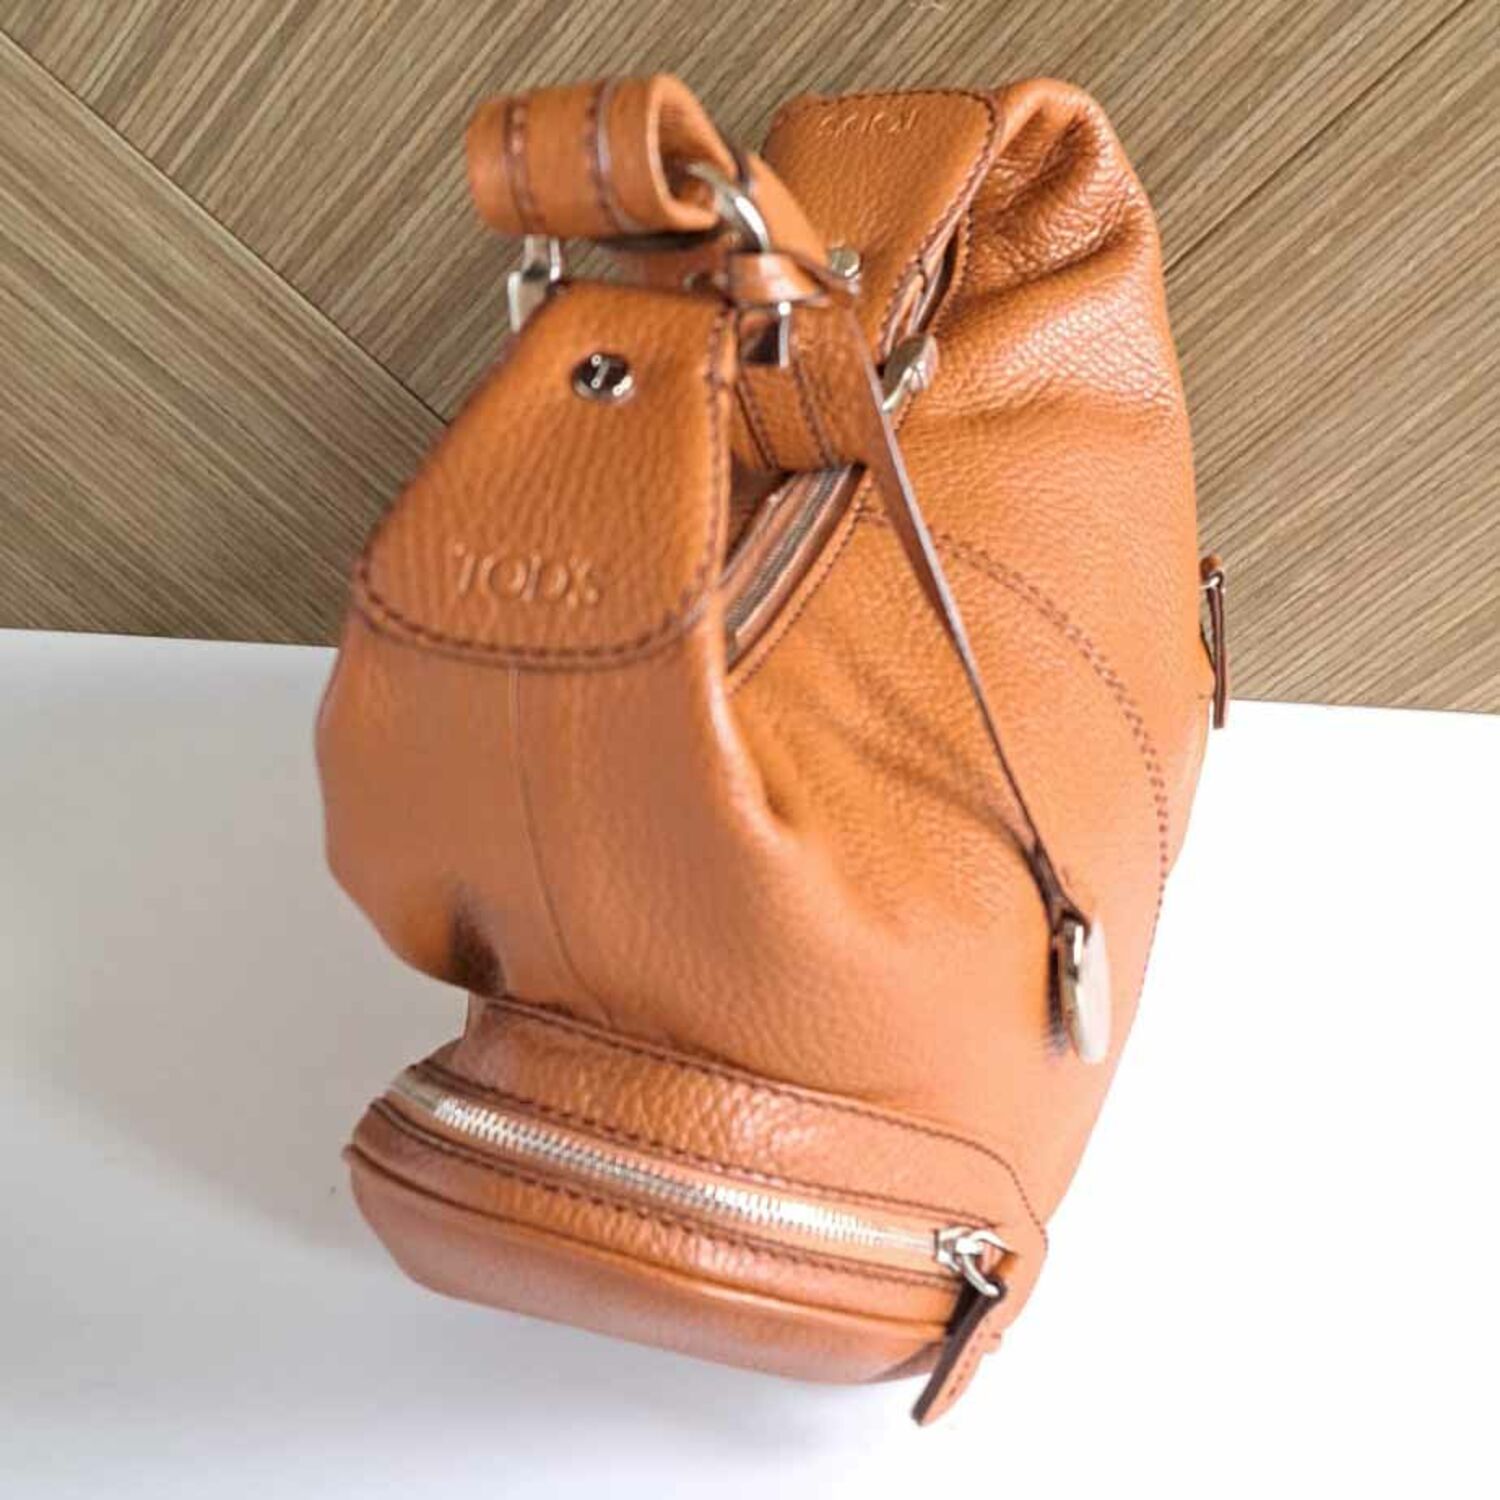 Leather small handbag